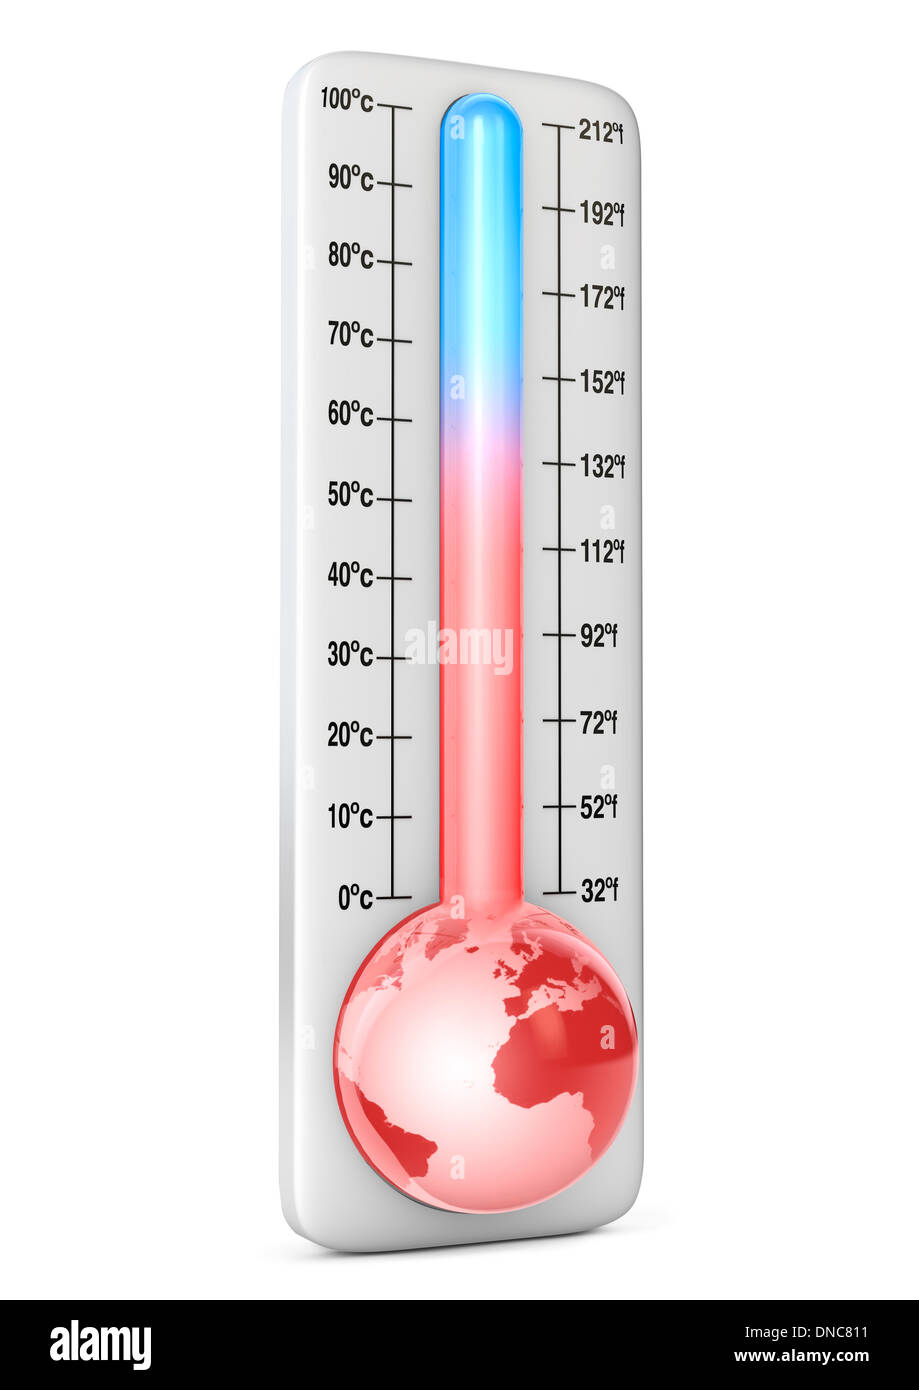 Le réchauffement climatique - concept illustré avec thermomètre Banque D'Images